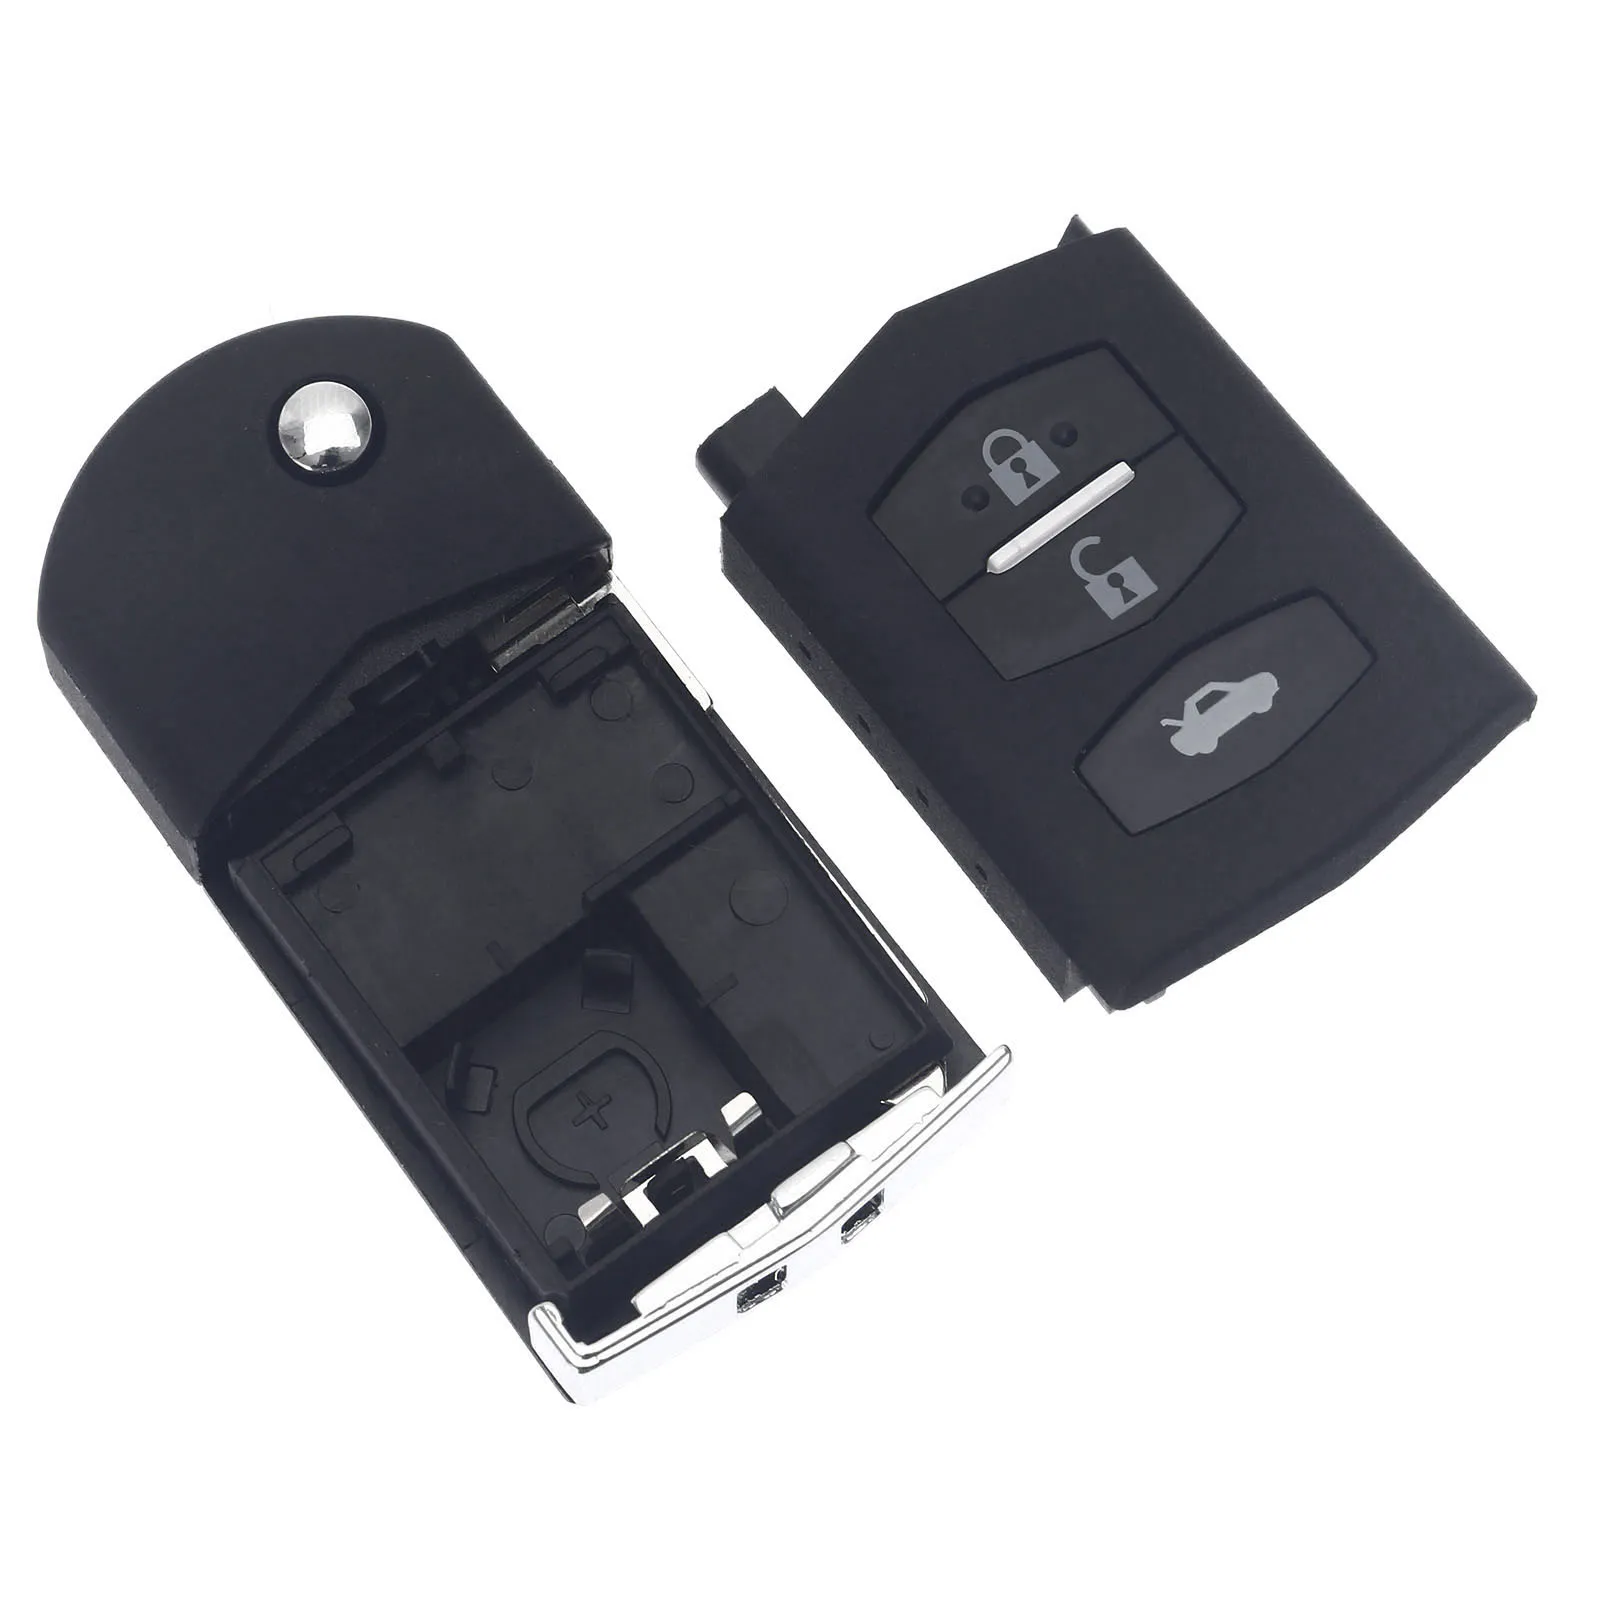 KEYECU Flip clé à distance pliante coque housse avec 2 3 4 boutons Fob pour  Mazda 3 5 6 M6 RX8 MX5 CX5 CX7 CX9 2005 2006 - 2015 - AliExpress